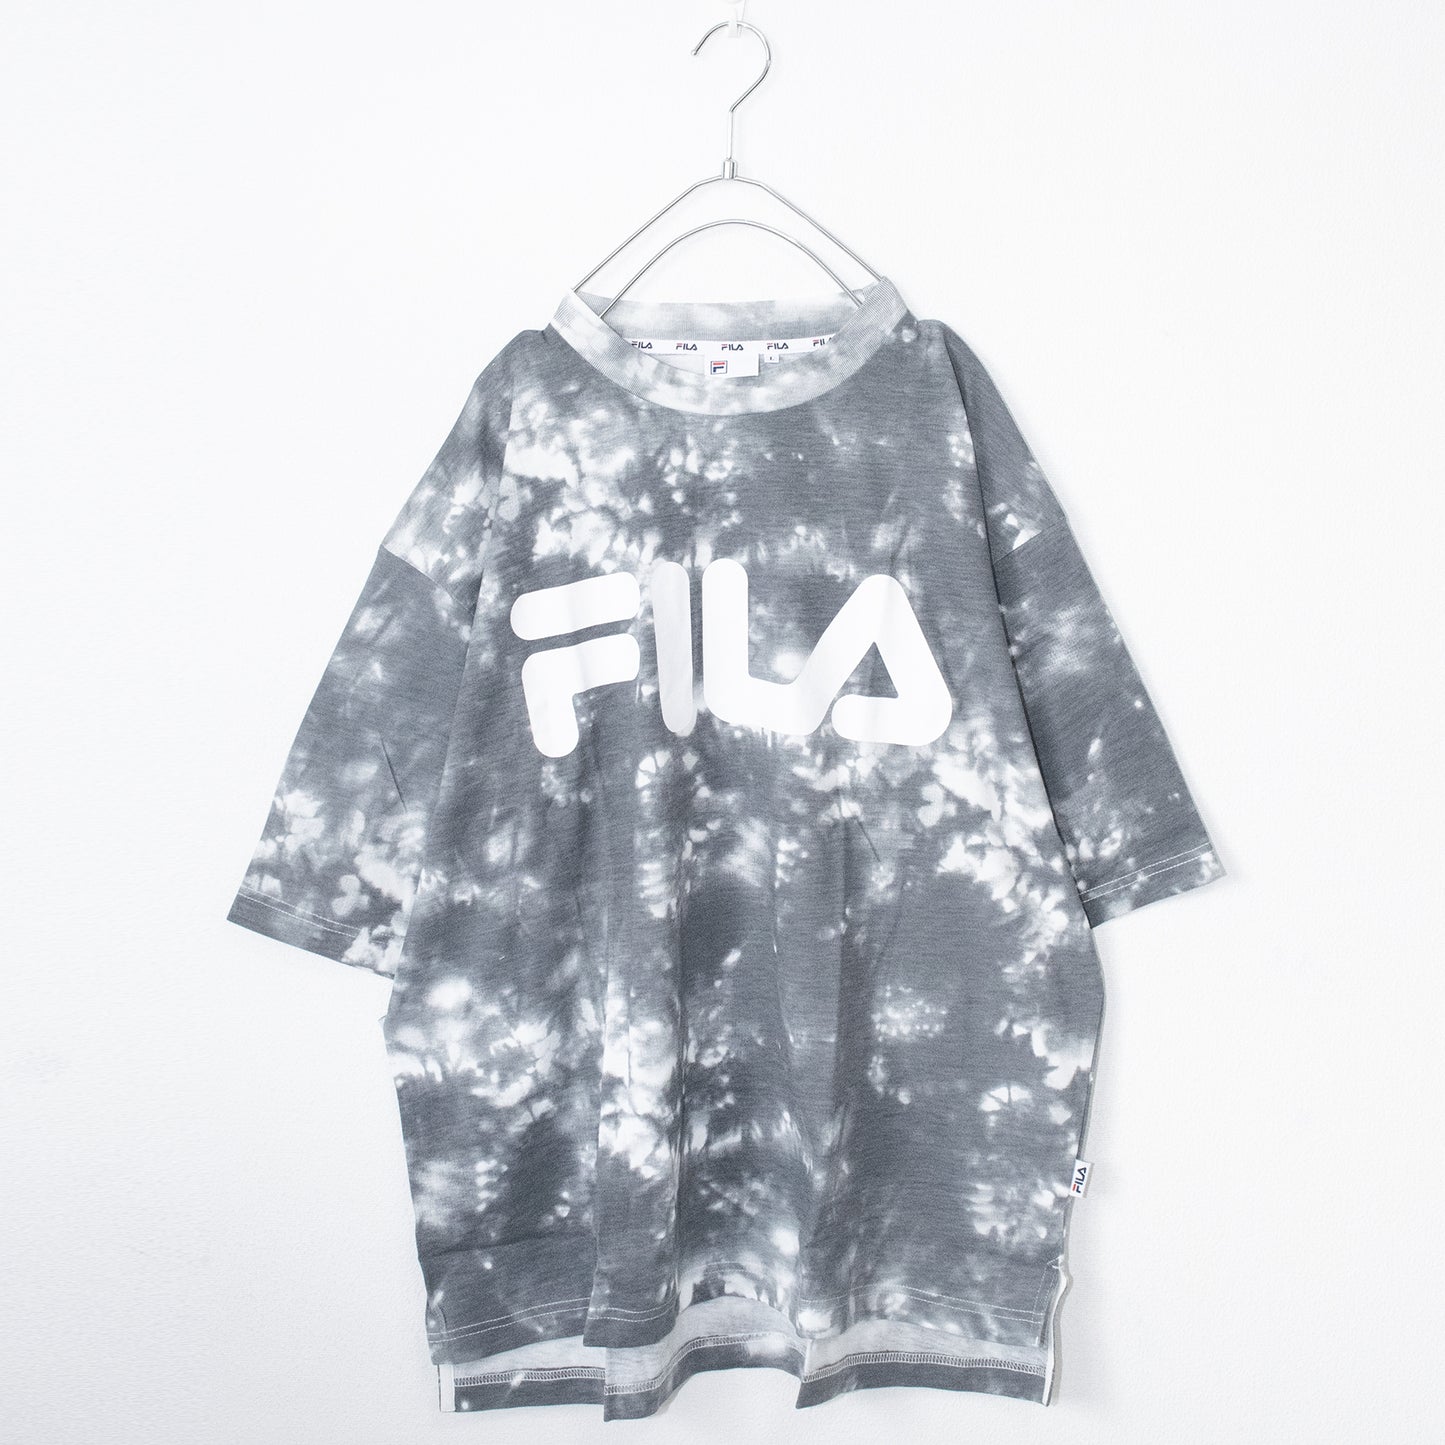 FILA Logo Print Ti-dye S/S T-shirt (Gray) - YOUAREMYPOISON